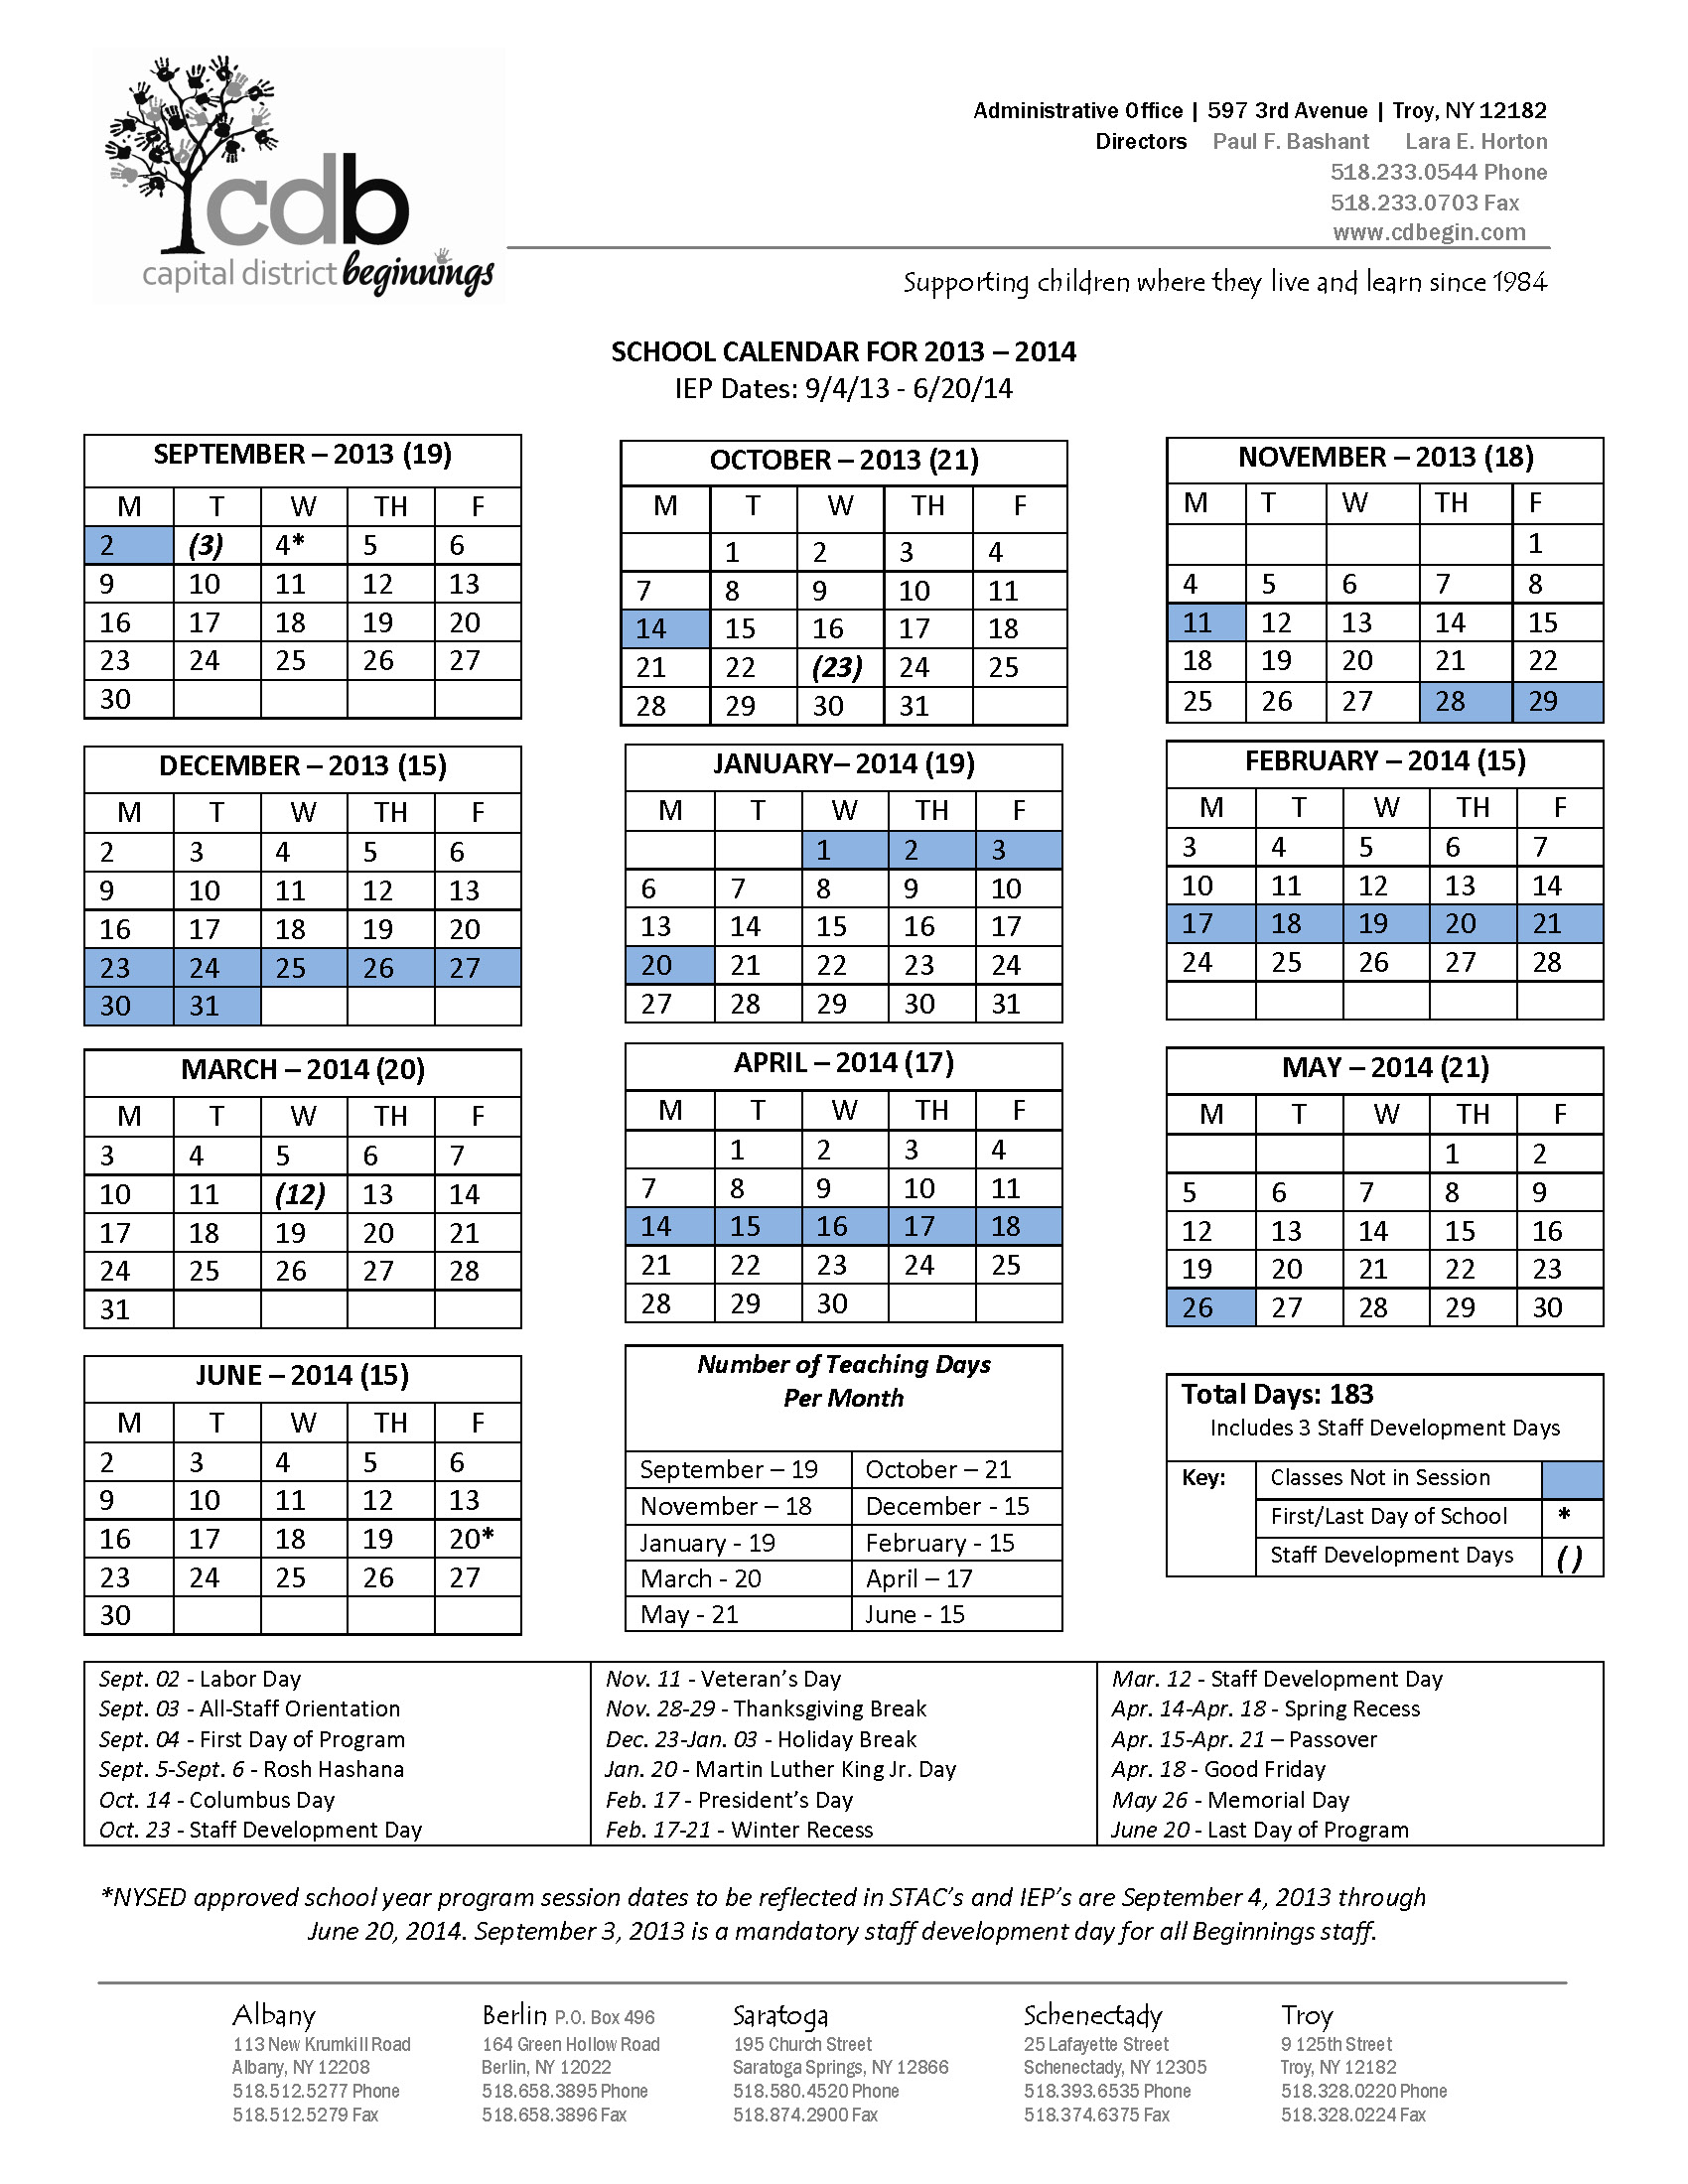 Capital District Beginnings Program Calendar